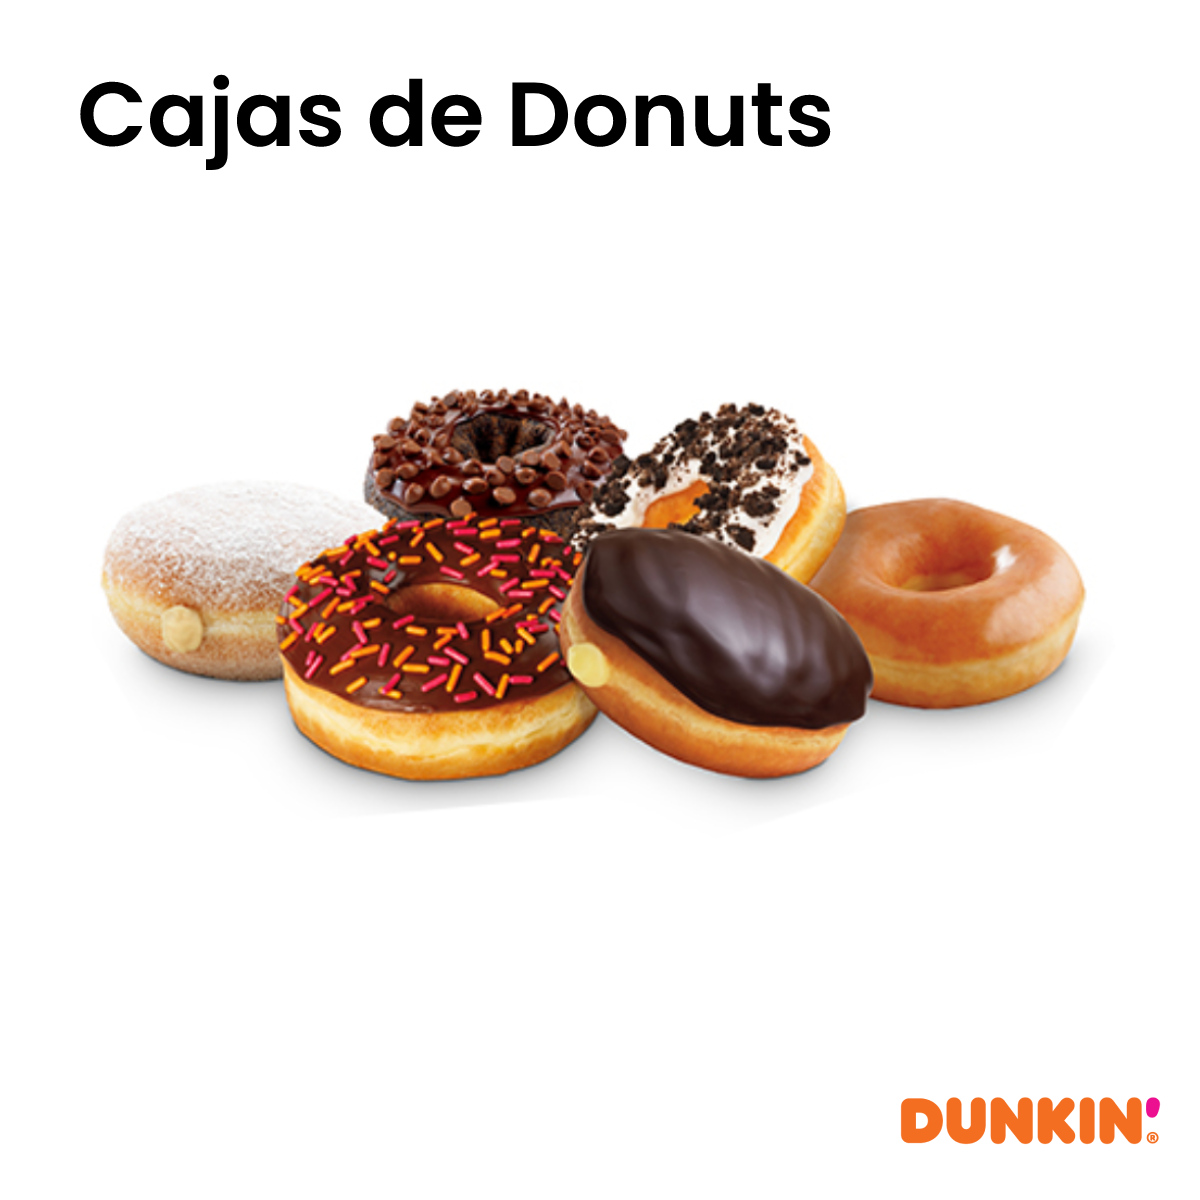 Bonos Caja de Donuts - Dunkin Donuts